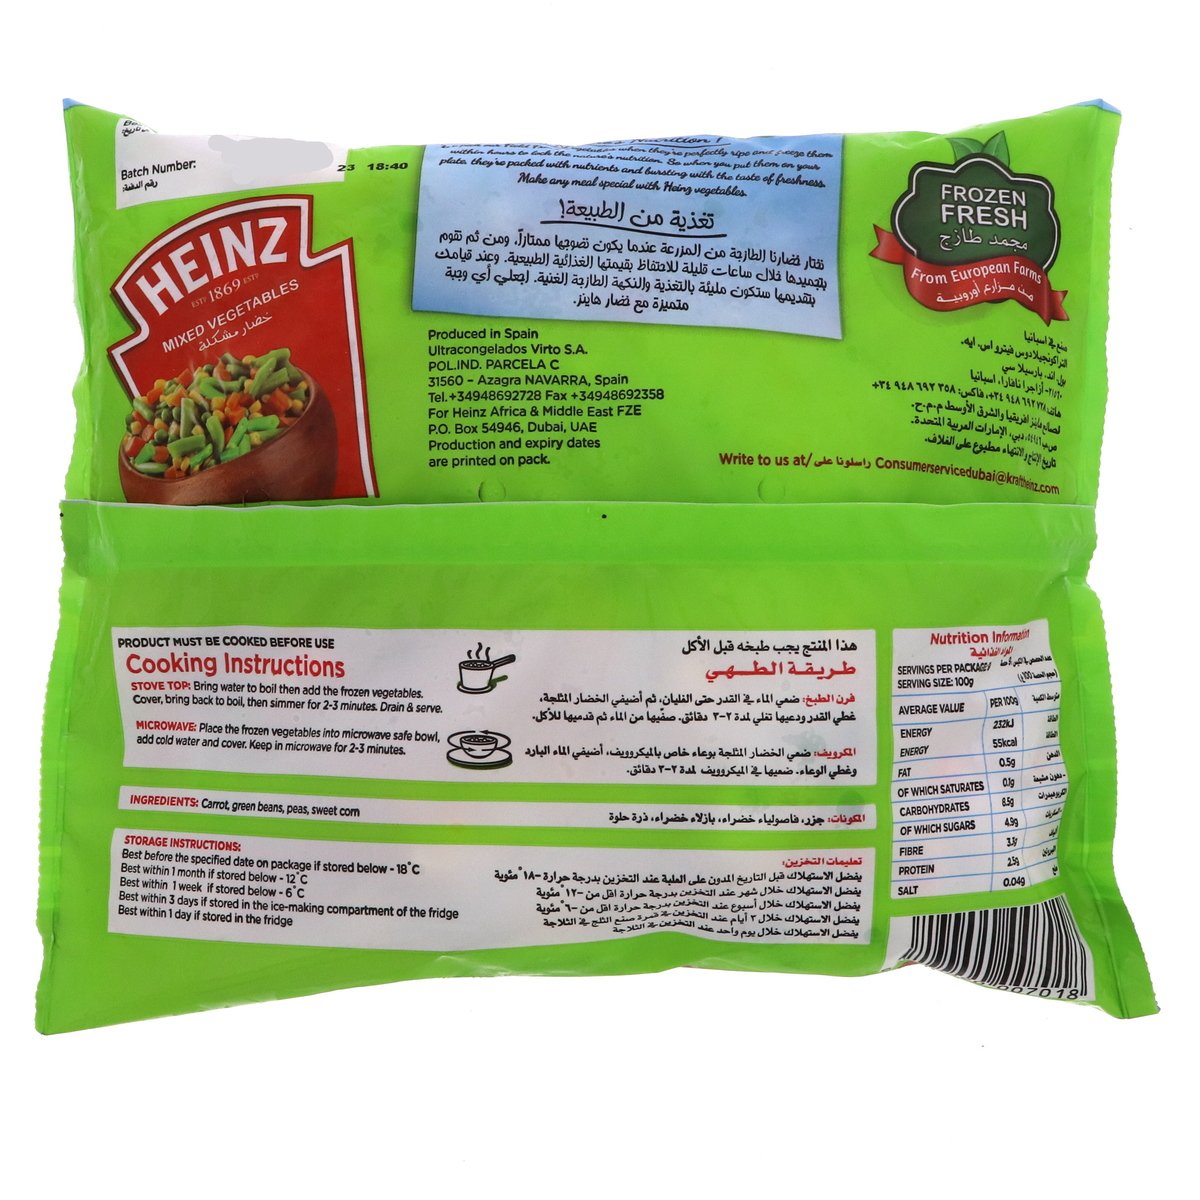 Heinz Frozen Mixed Vegetables 900 g